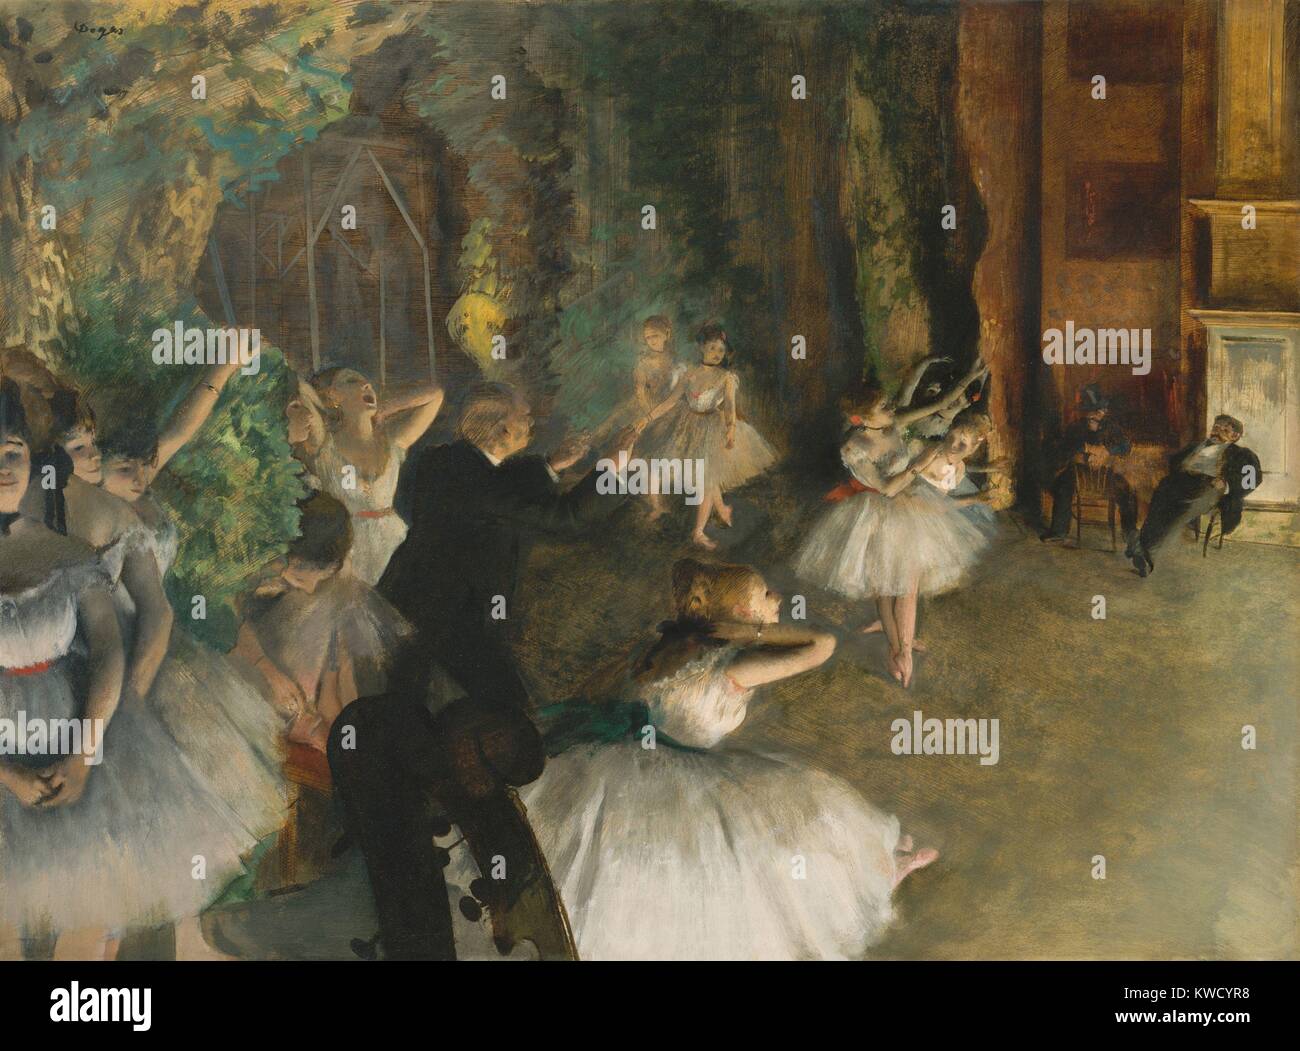 Répétition du Ballet sur scène, par Edgar Degas, 1874, dessin technique mixte impressionnistes français. Ballerines en positions naturelles hors scène, tandis que les hommes d'observer les danseurs sur scène. Il y a des parchemins violon recadrée amusant en bas à gauche (BSLOC 2017 3 103) Banque D'Images